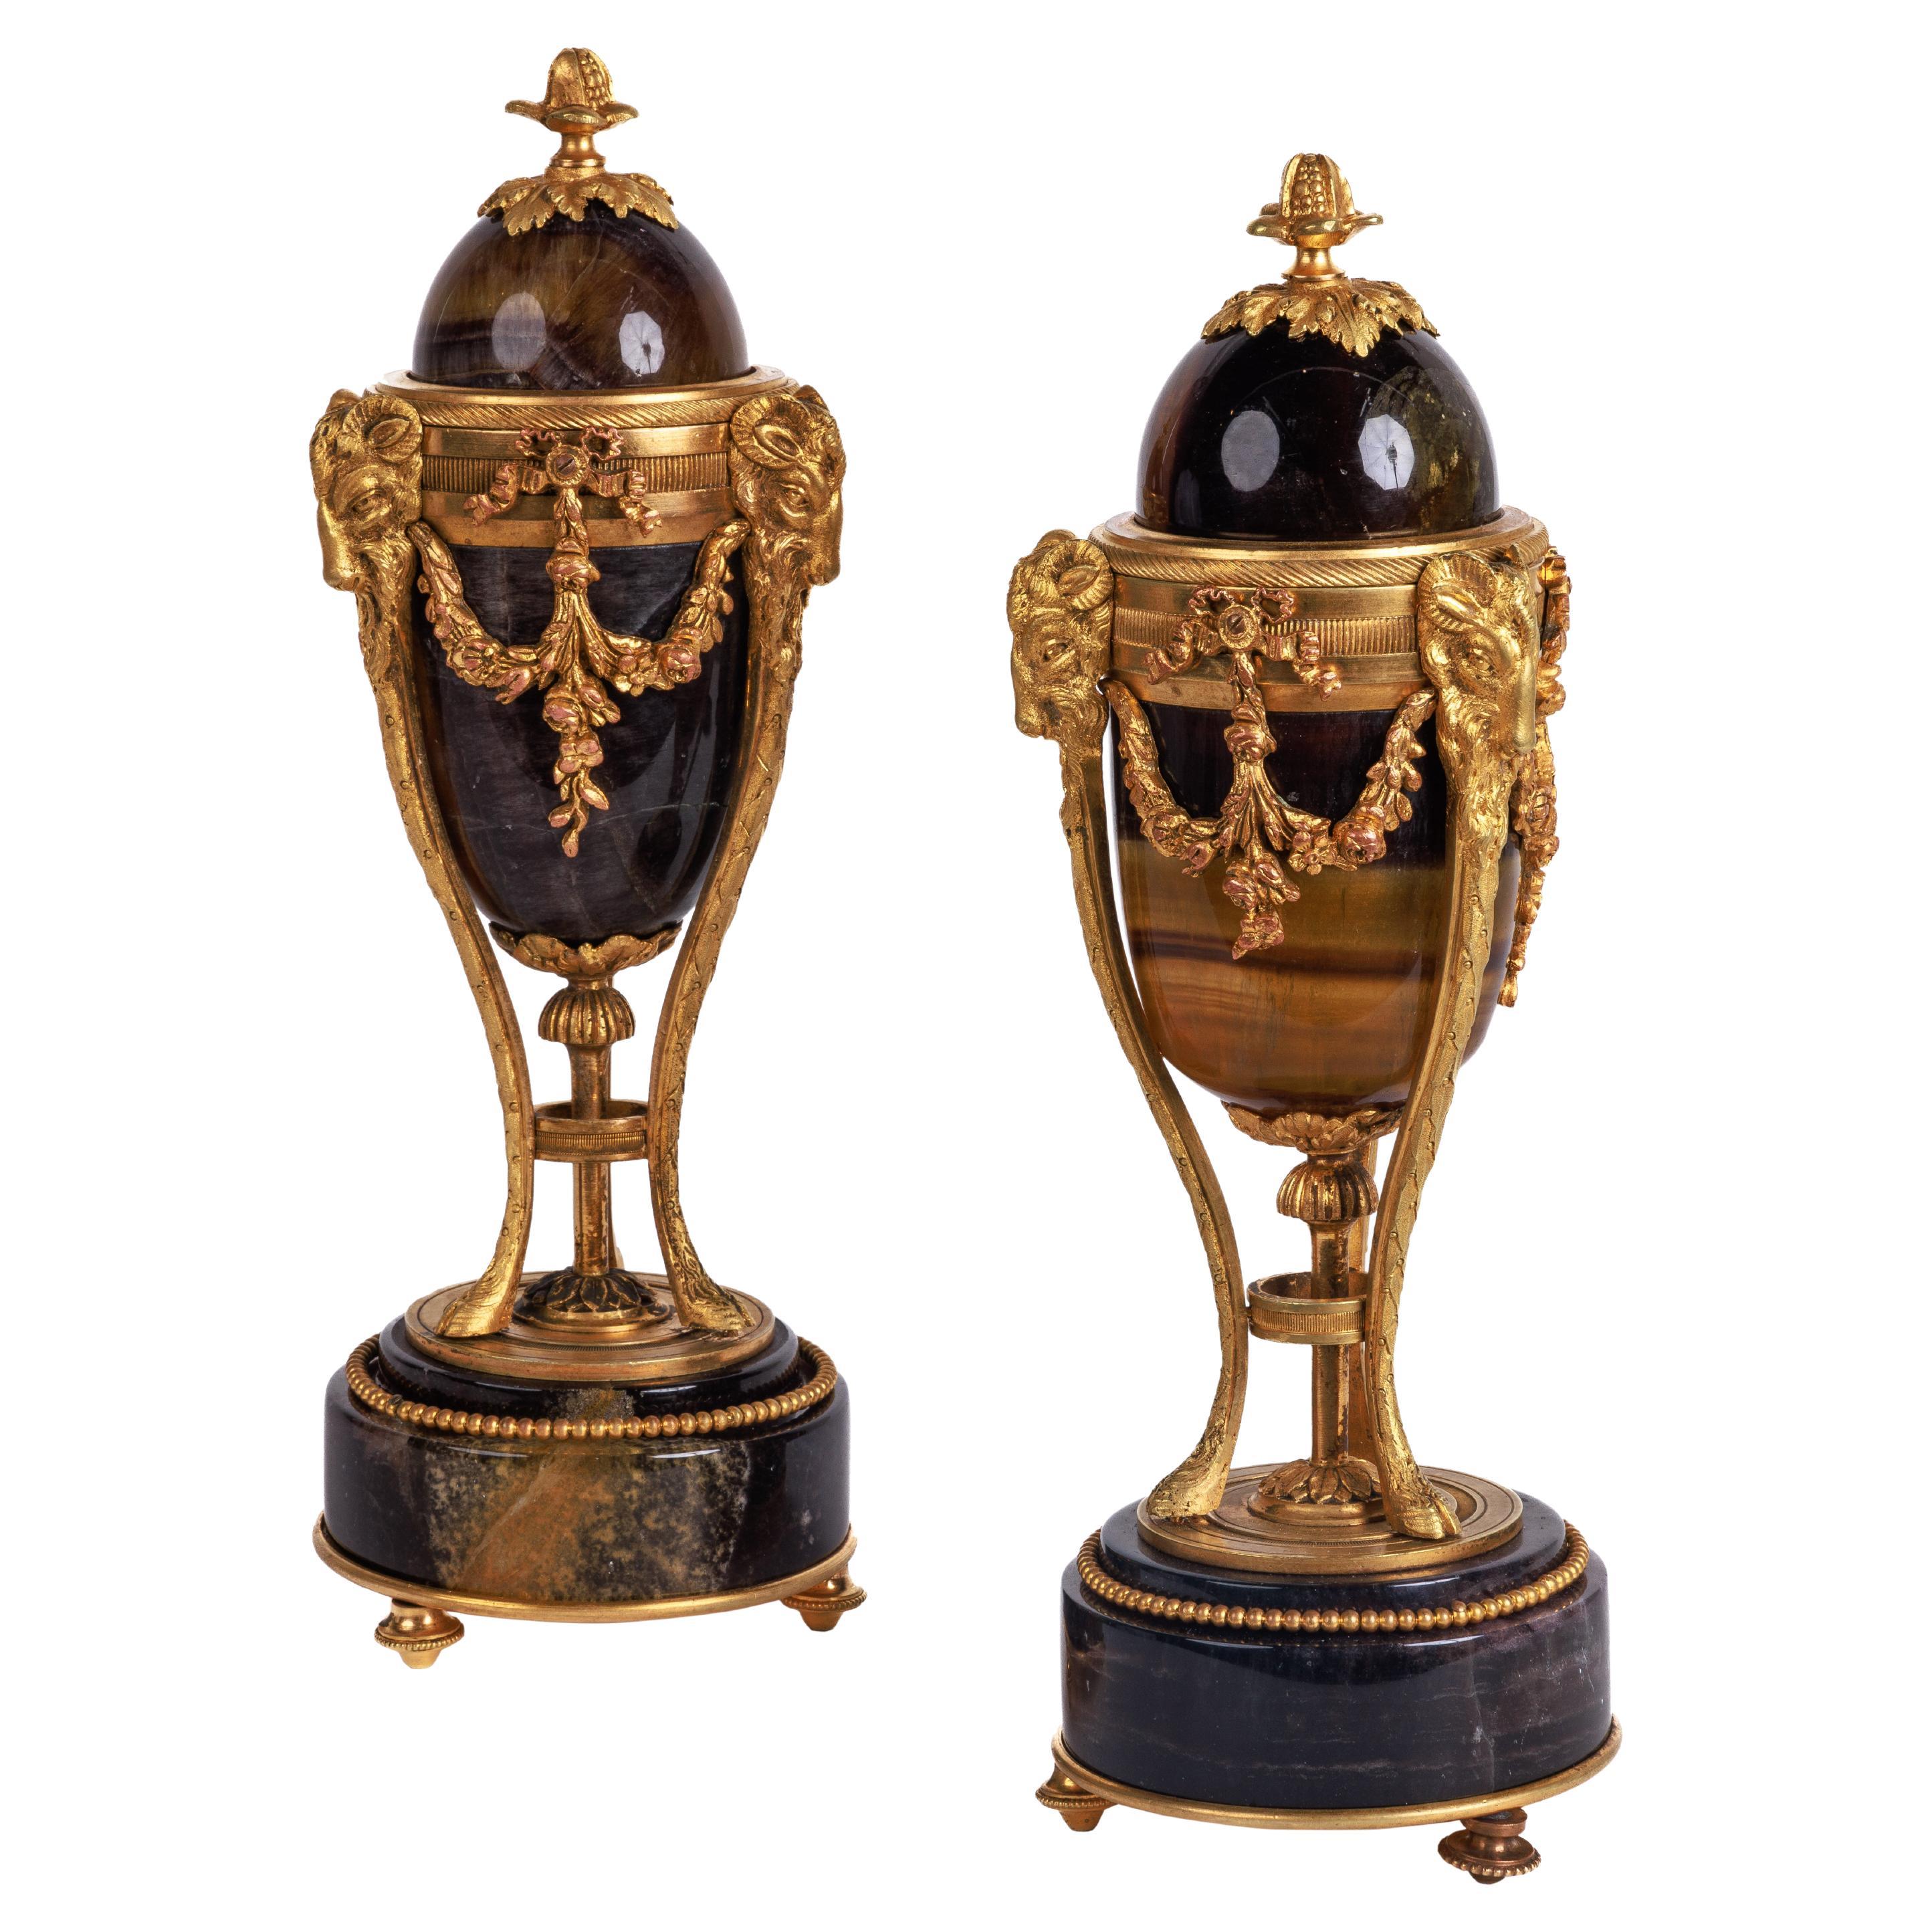 Rare paire de chandeliers français John bleus montés en bronze doré, vers 1870